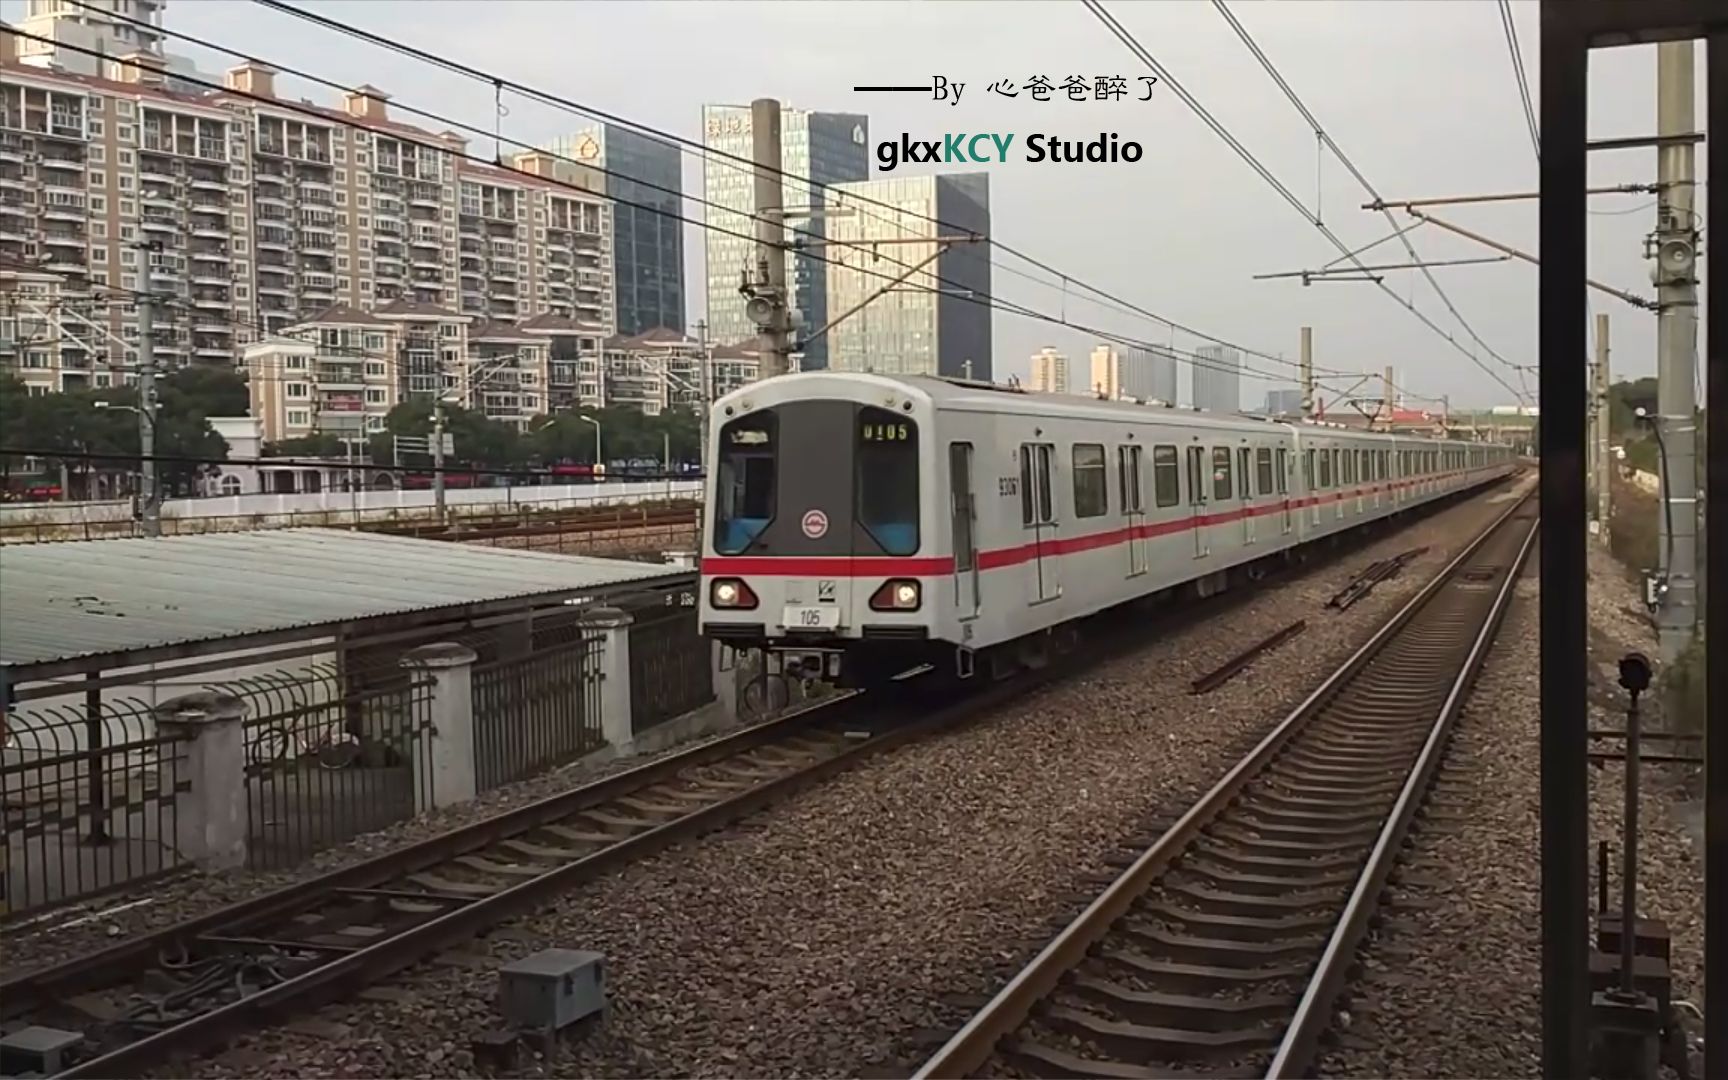 上海地铁10号线 - 快懂百科